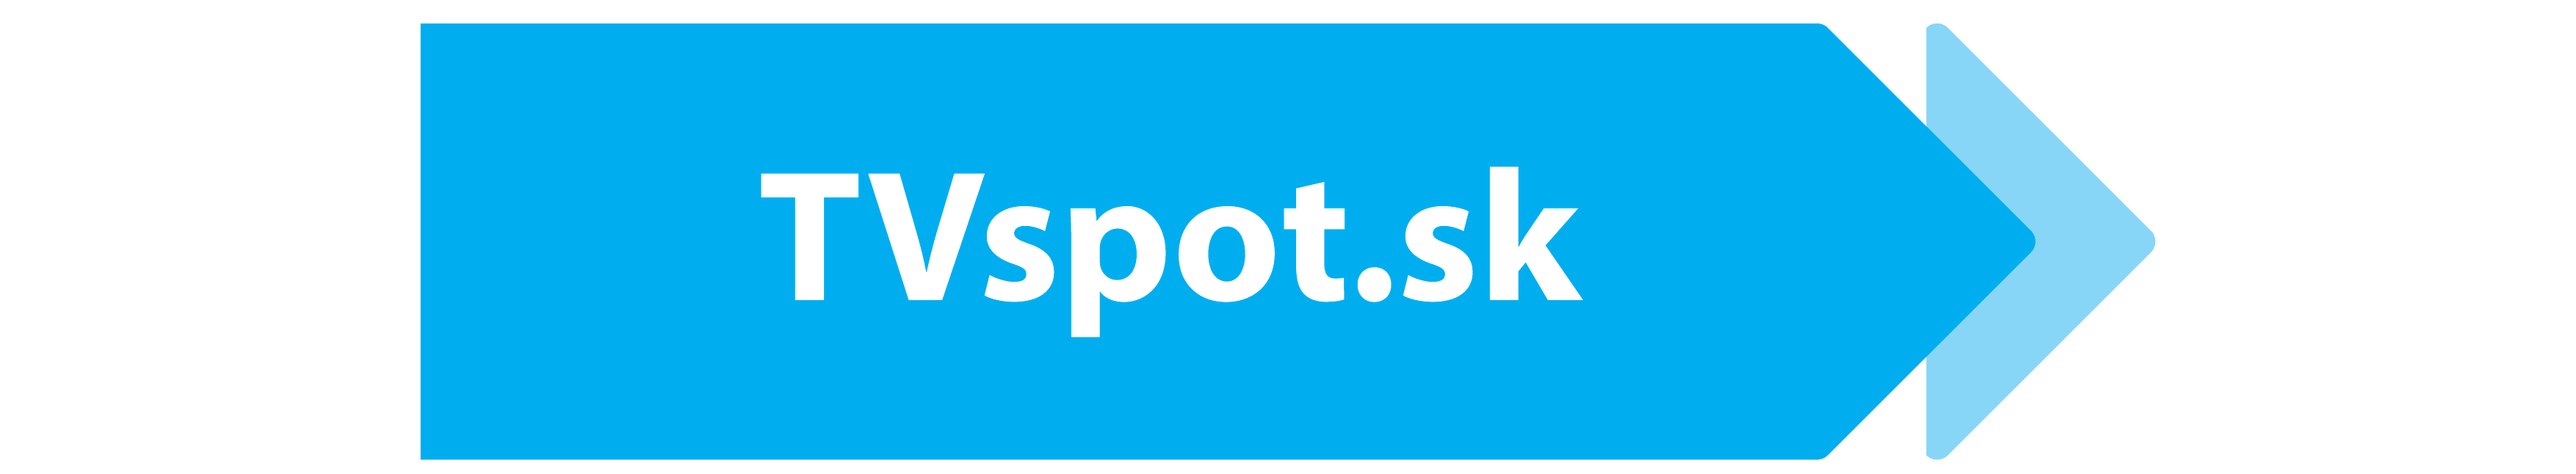 TVspot.sk